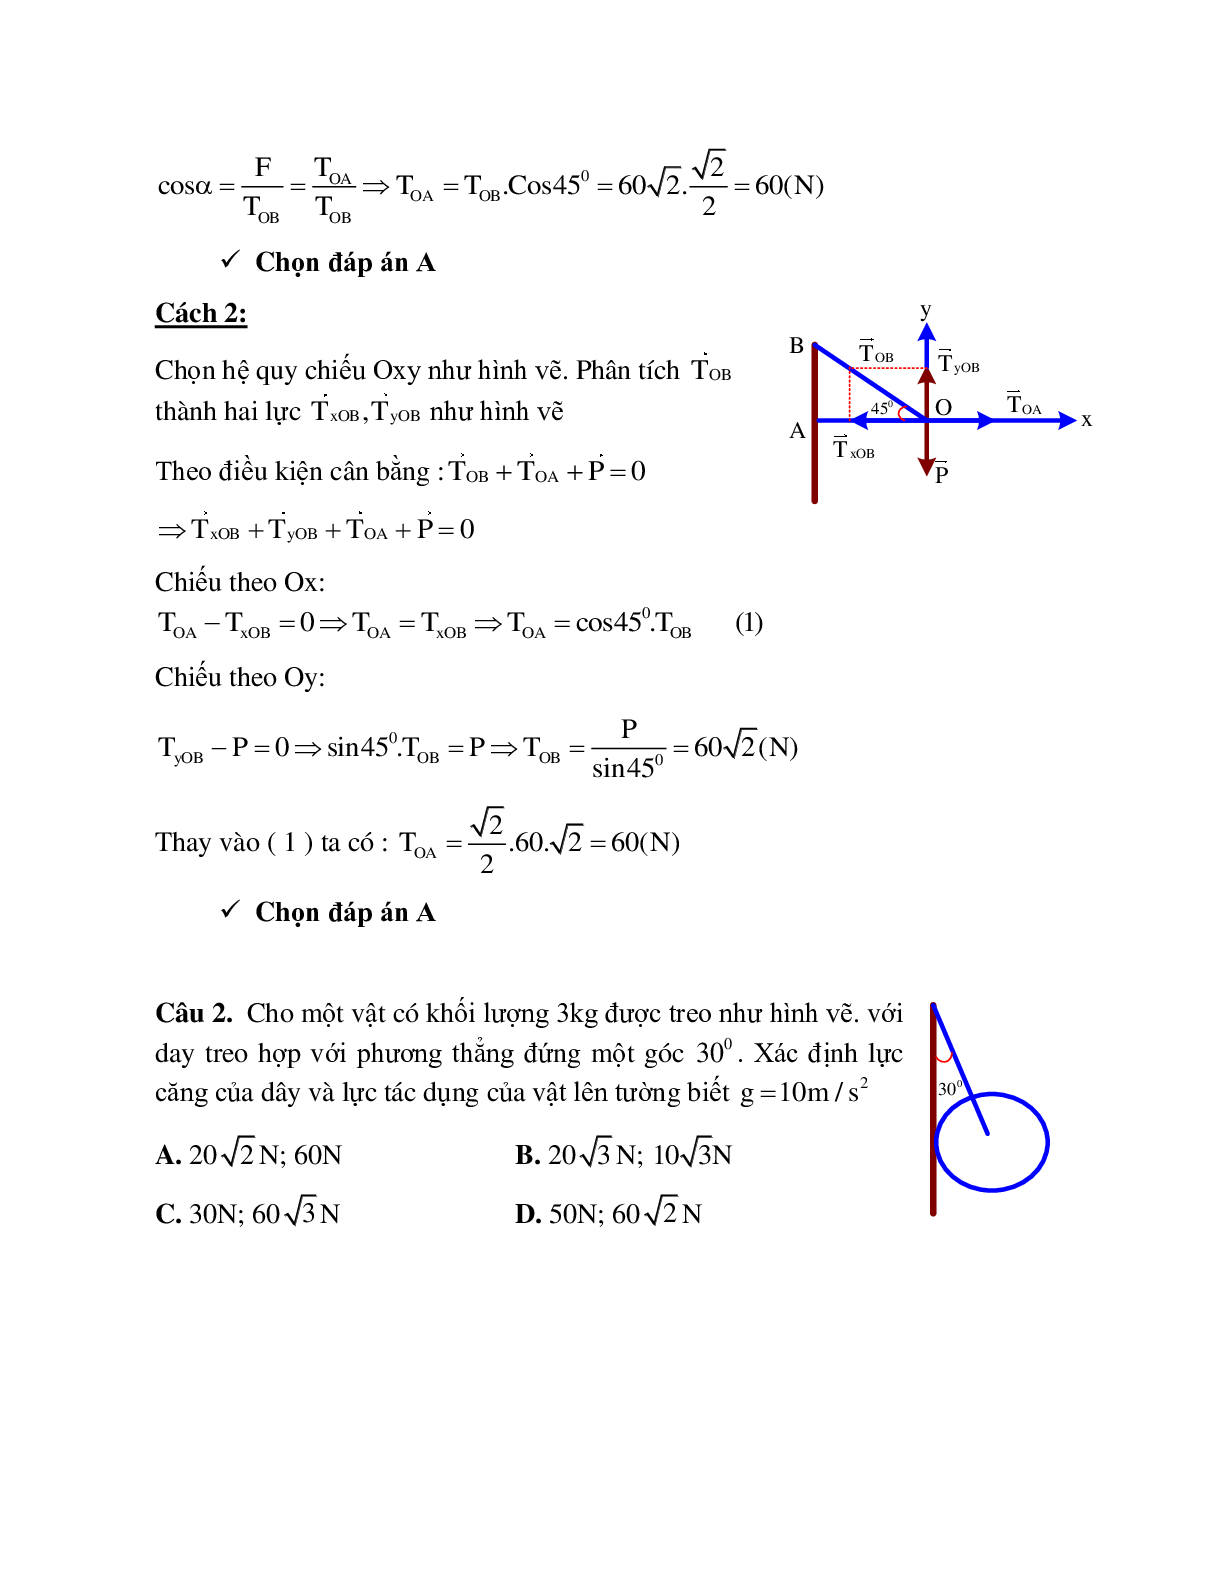 Phương pháp giải và bài tập về Xác định lực tổng hợp tác dụng lên vật (trang 2)